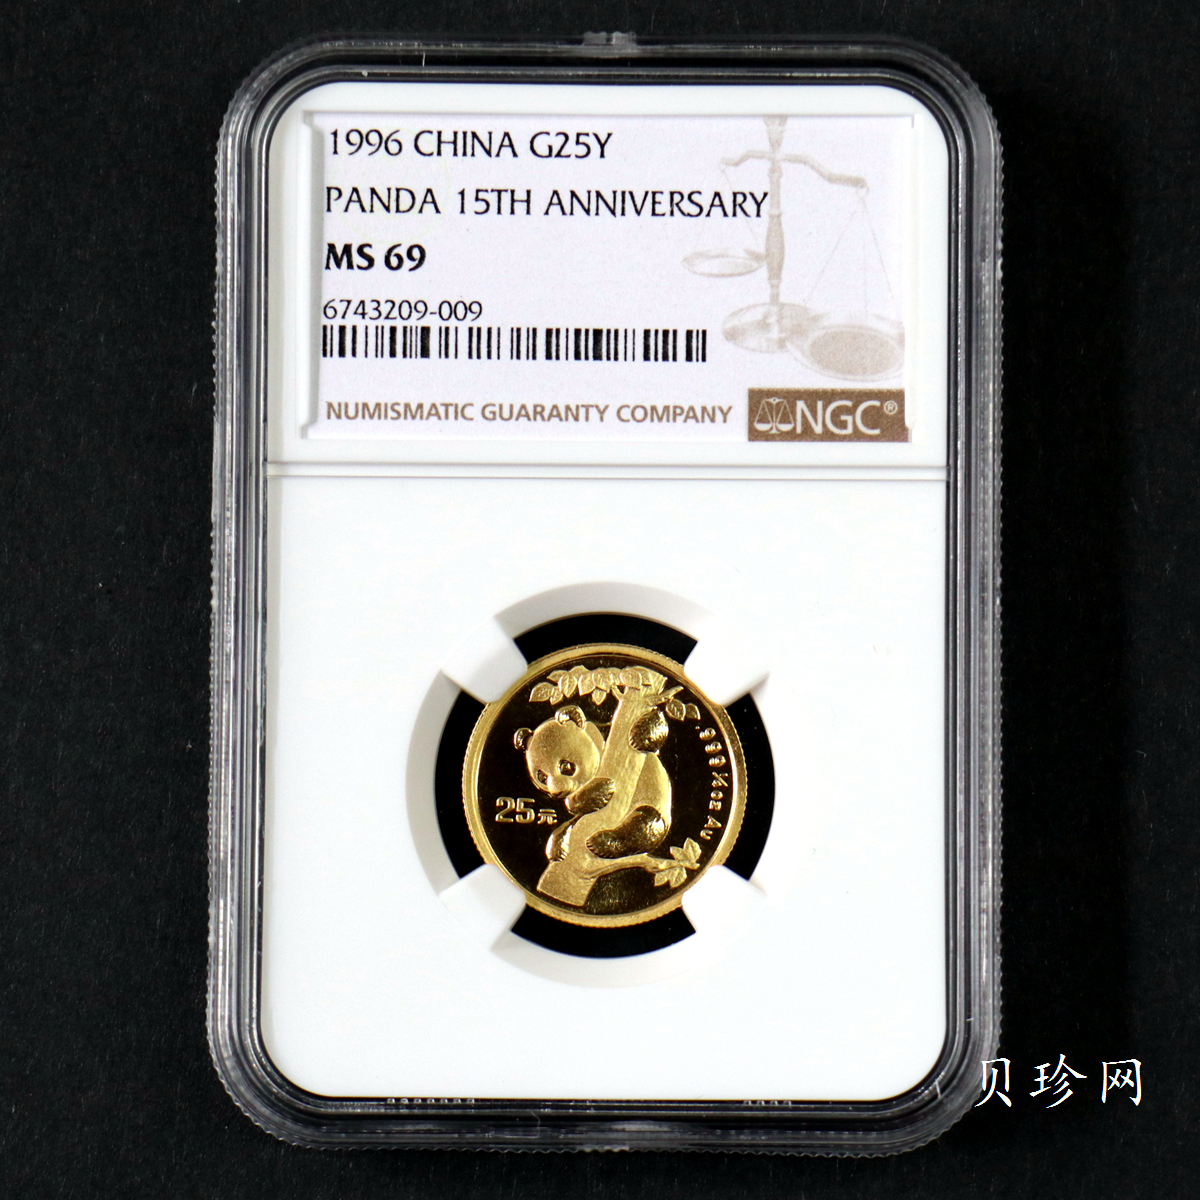 【960202】1996年中国熊猫金币发行15周年纪念金币1/4盎司普制金币